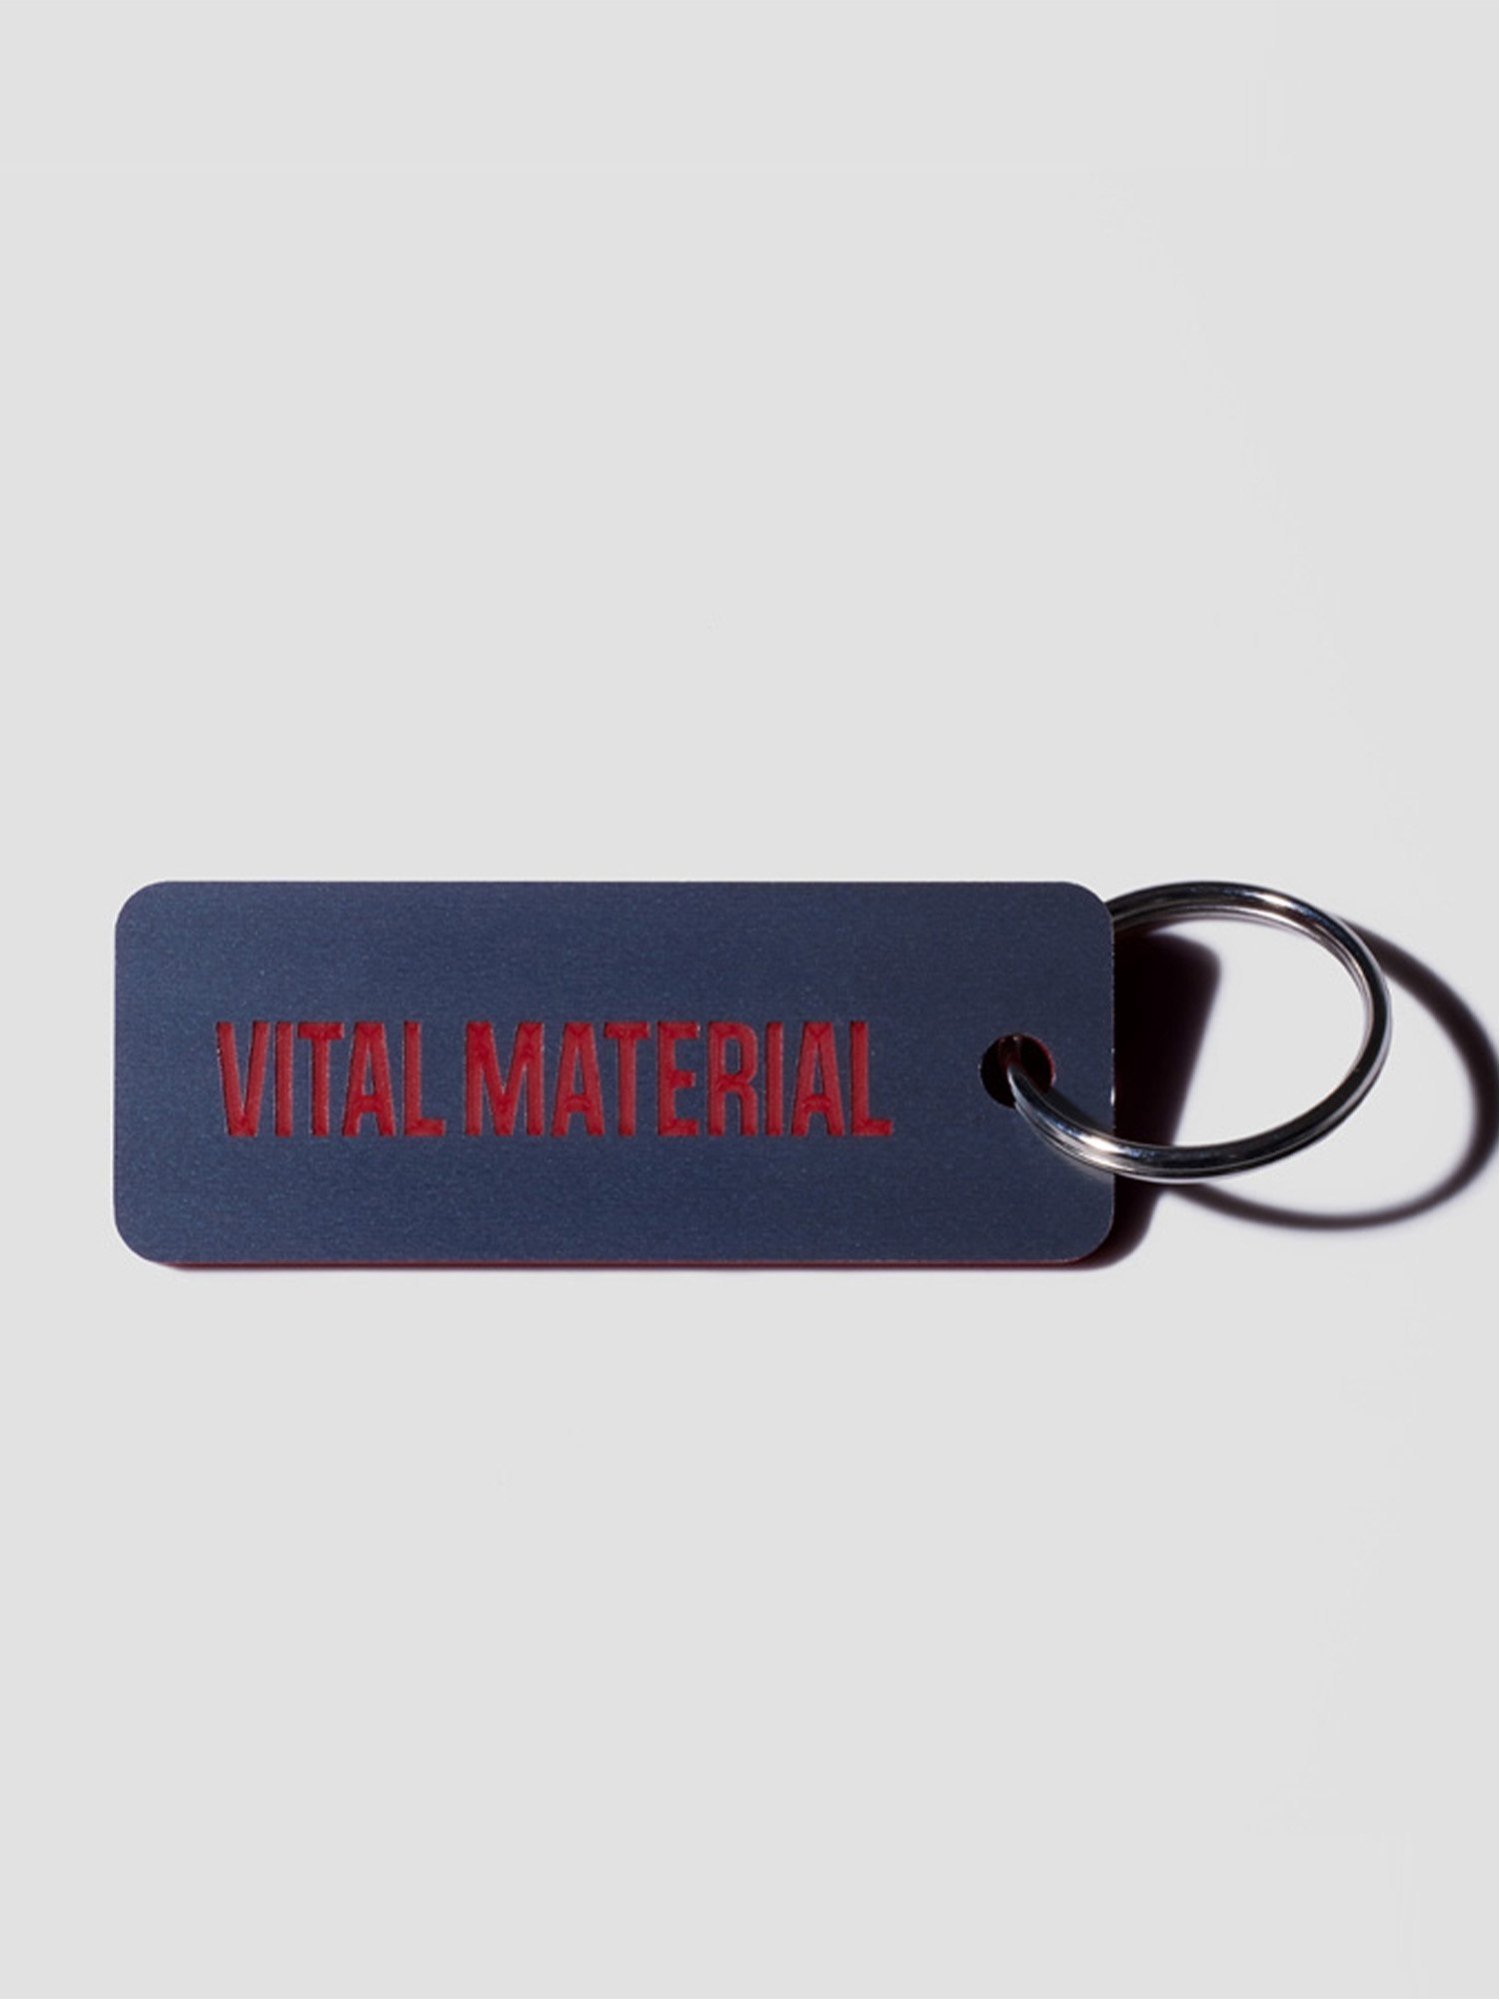 楽天Rakuten FashionVITAL MATERIAL VITAL MATERIAL × Various Keytags BR. STAINLESS / RED ヴァイタル マテリアル ファッション雑貨 チャーム・キーチェーン ネイビー